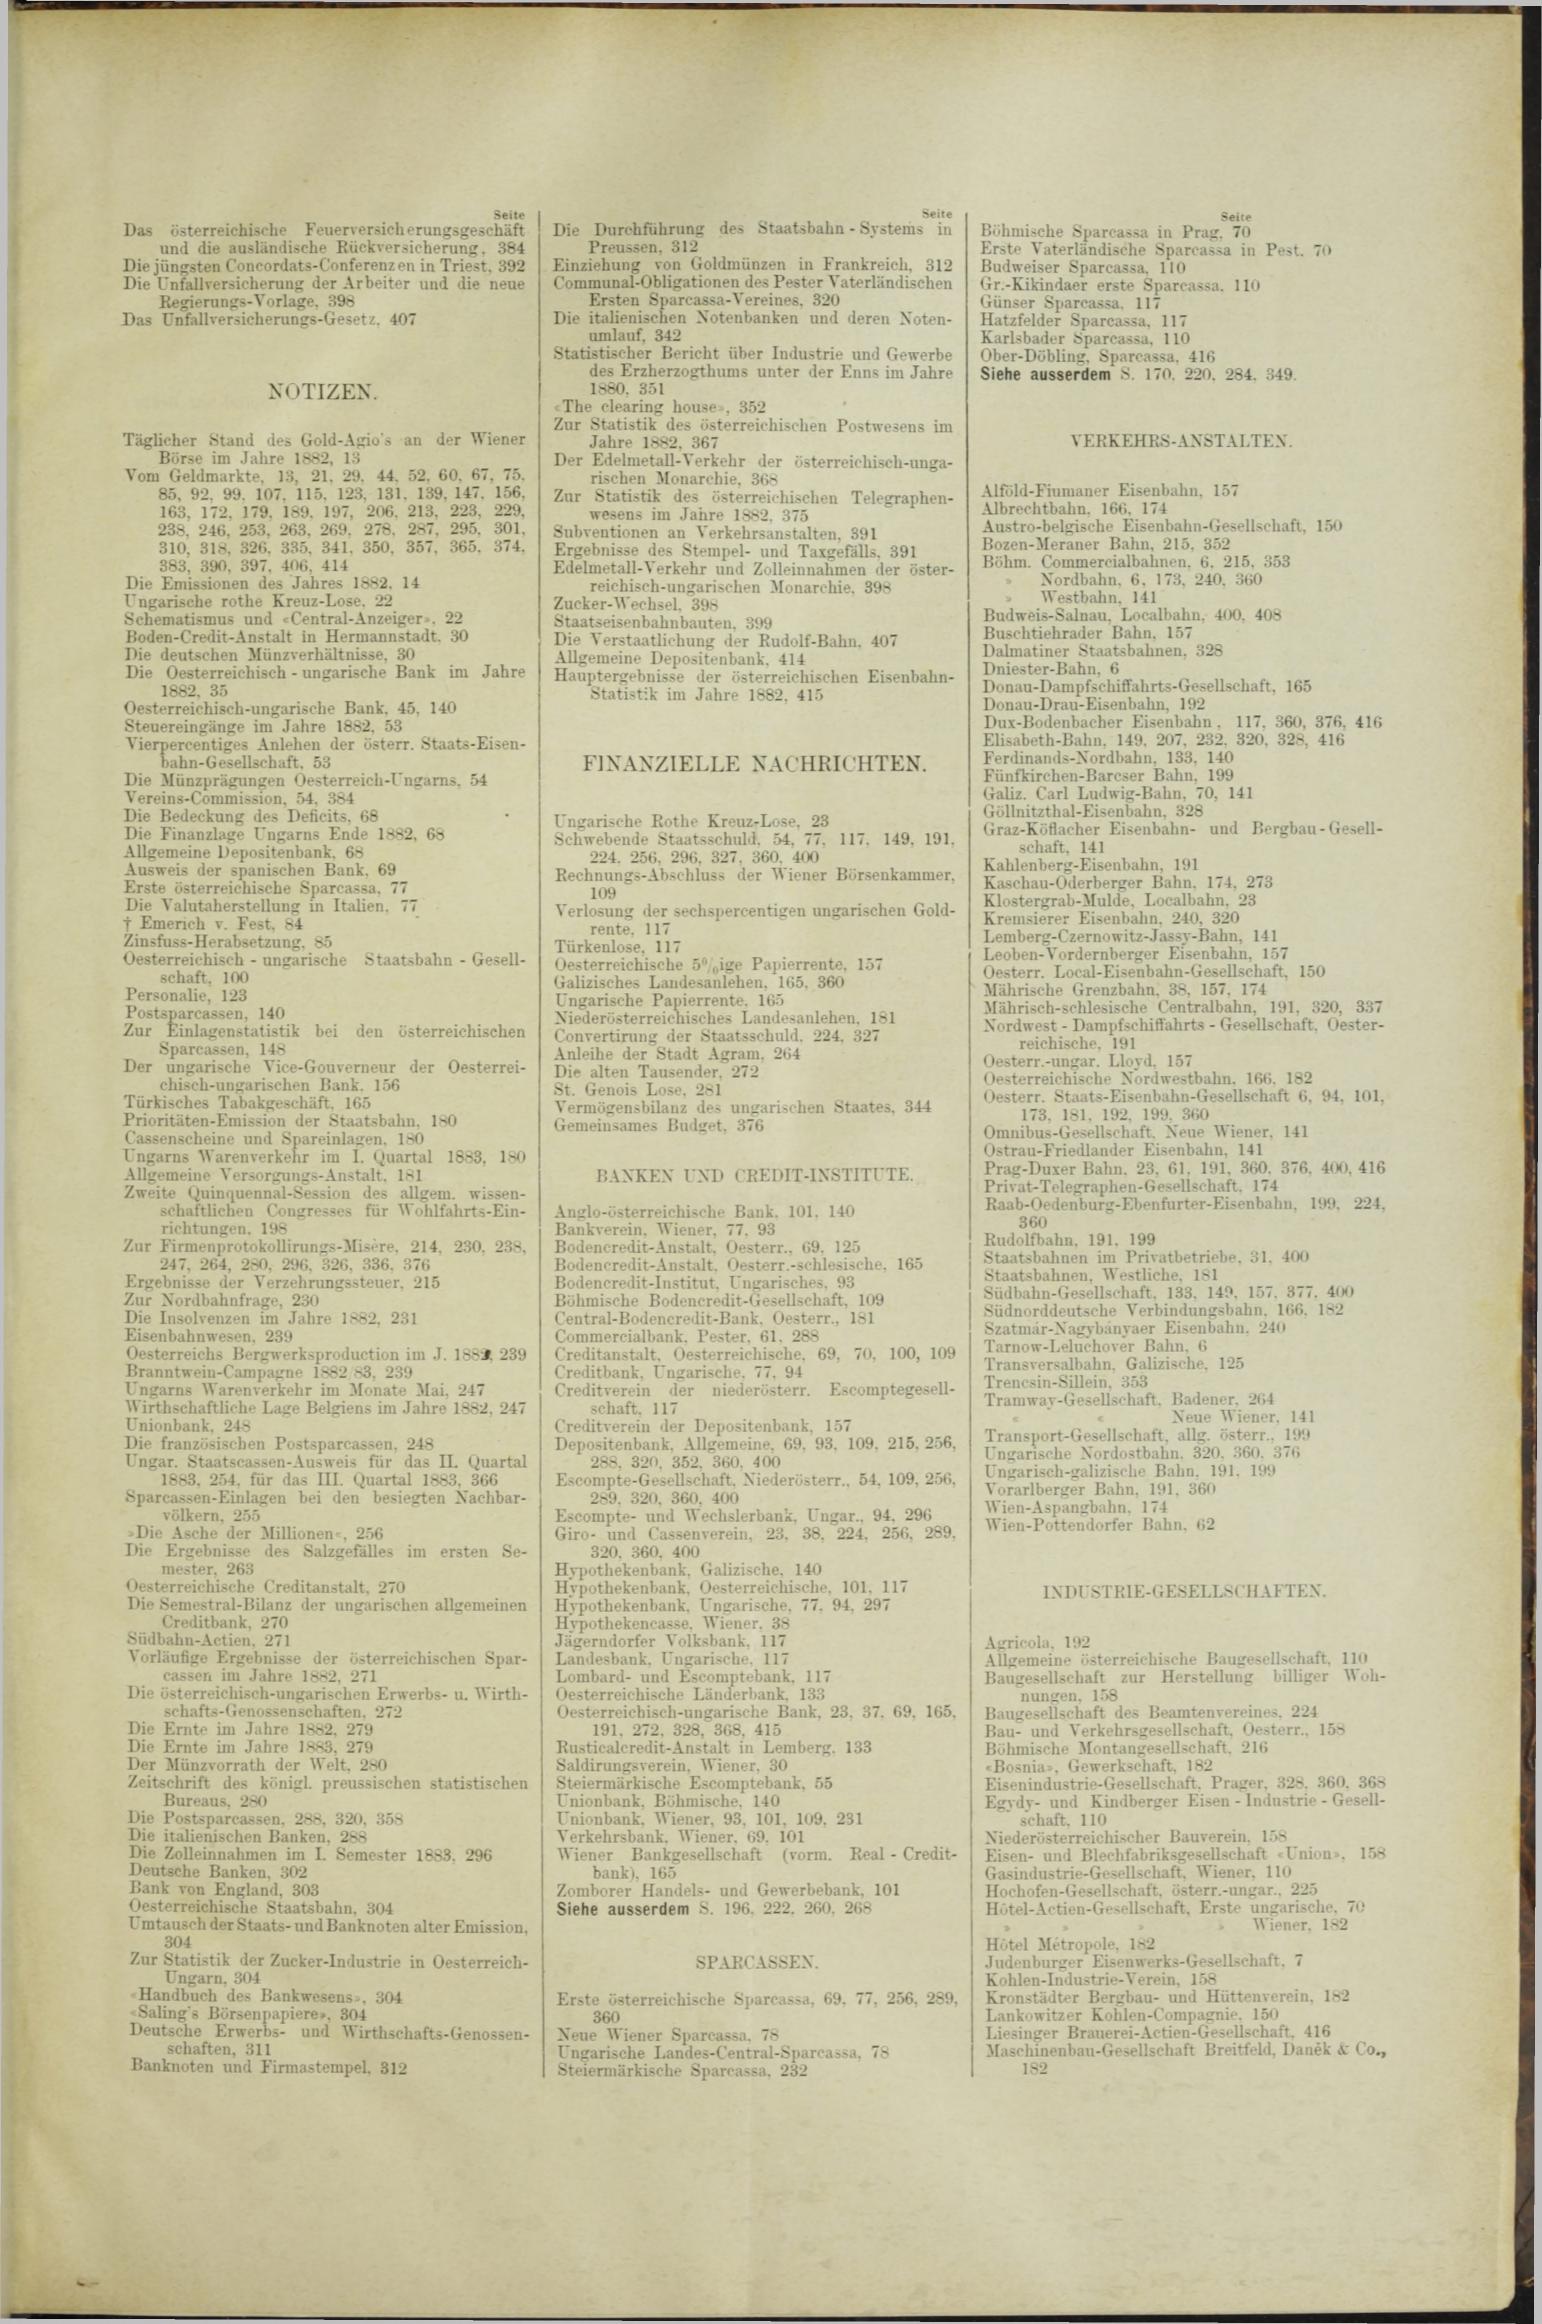 Der Tresor 11.10.1883 - Seite 11